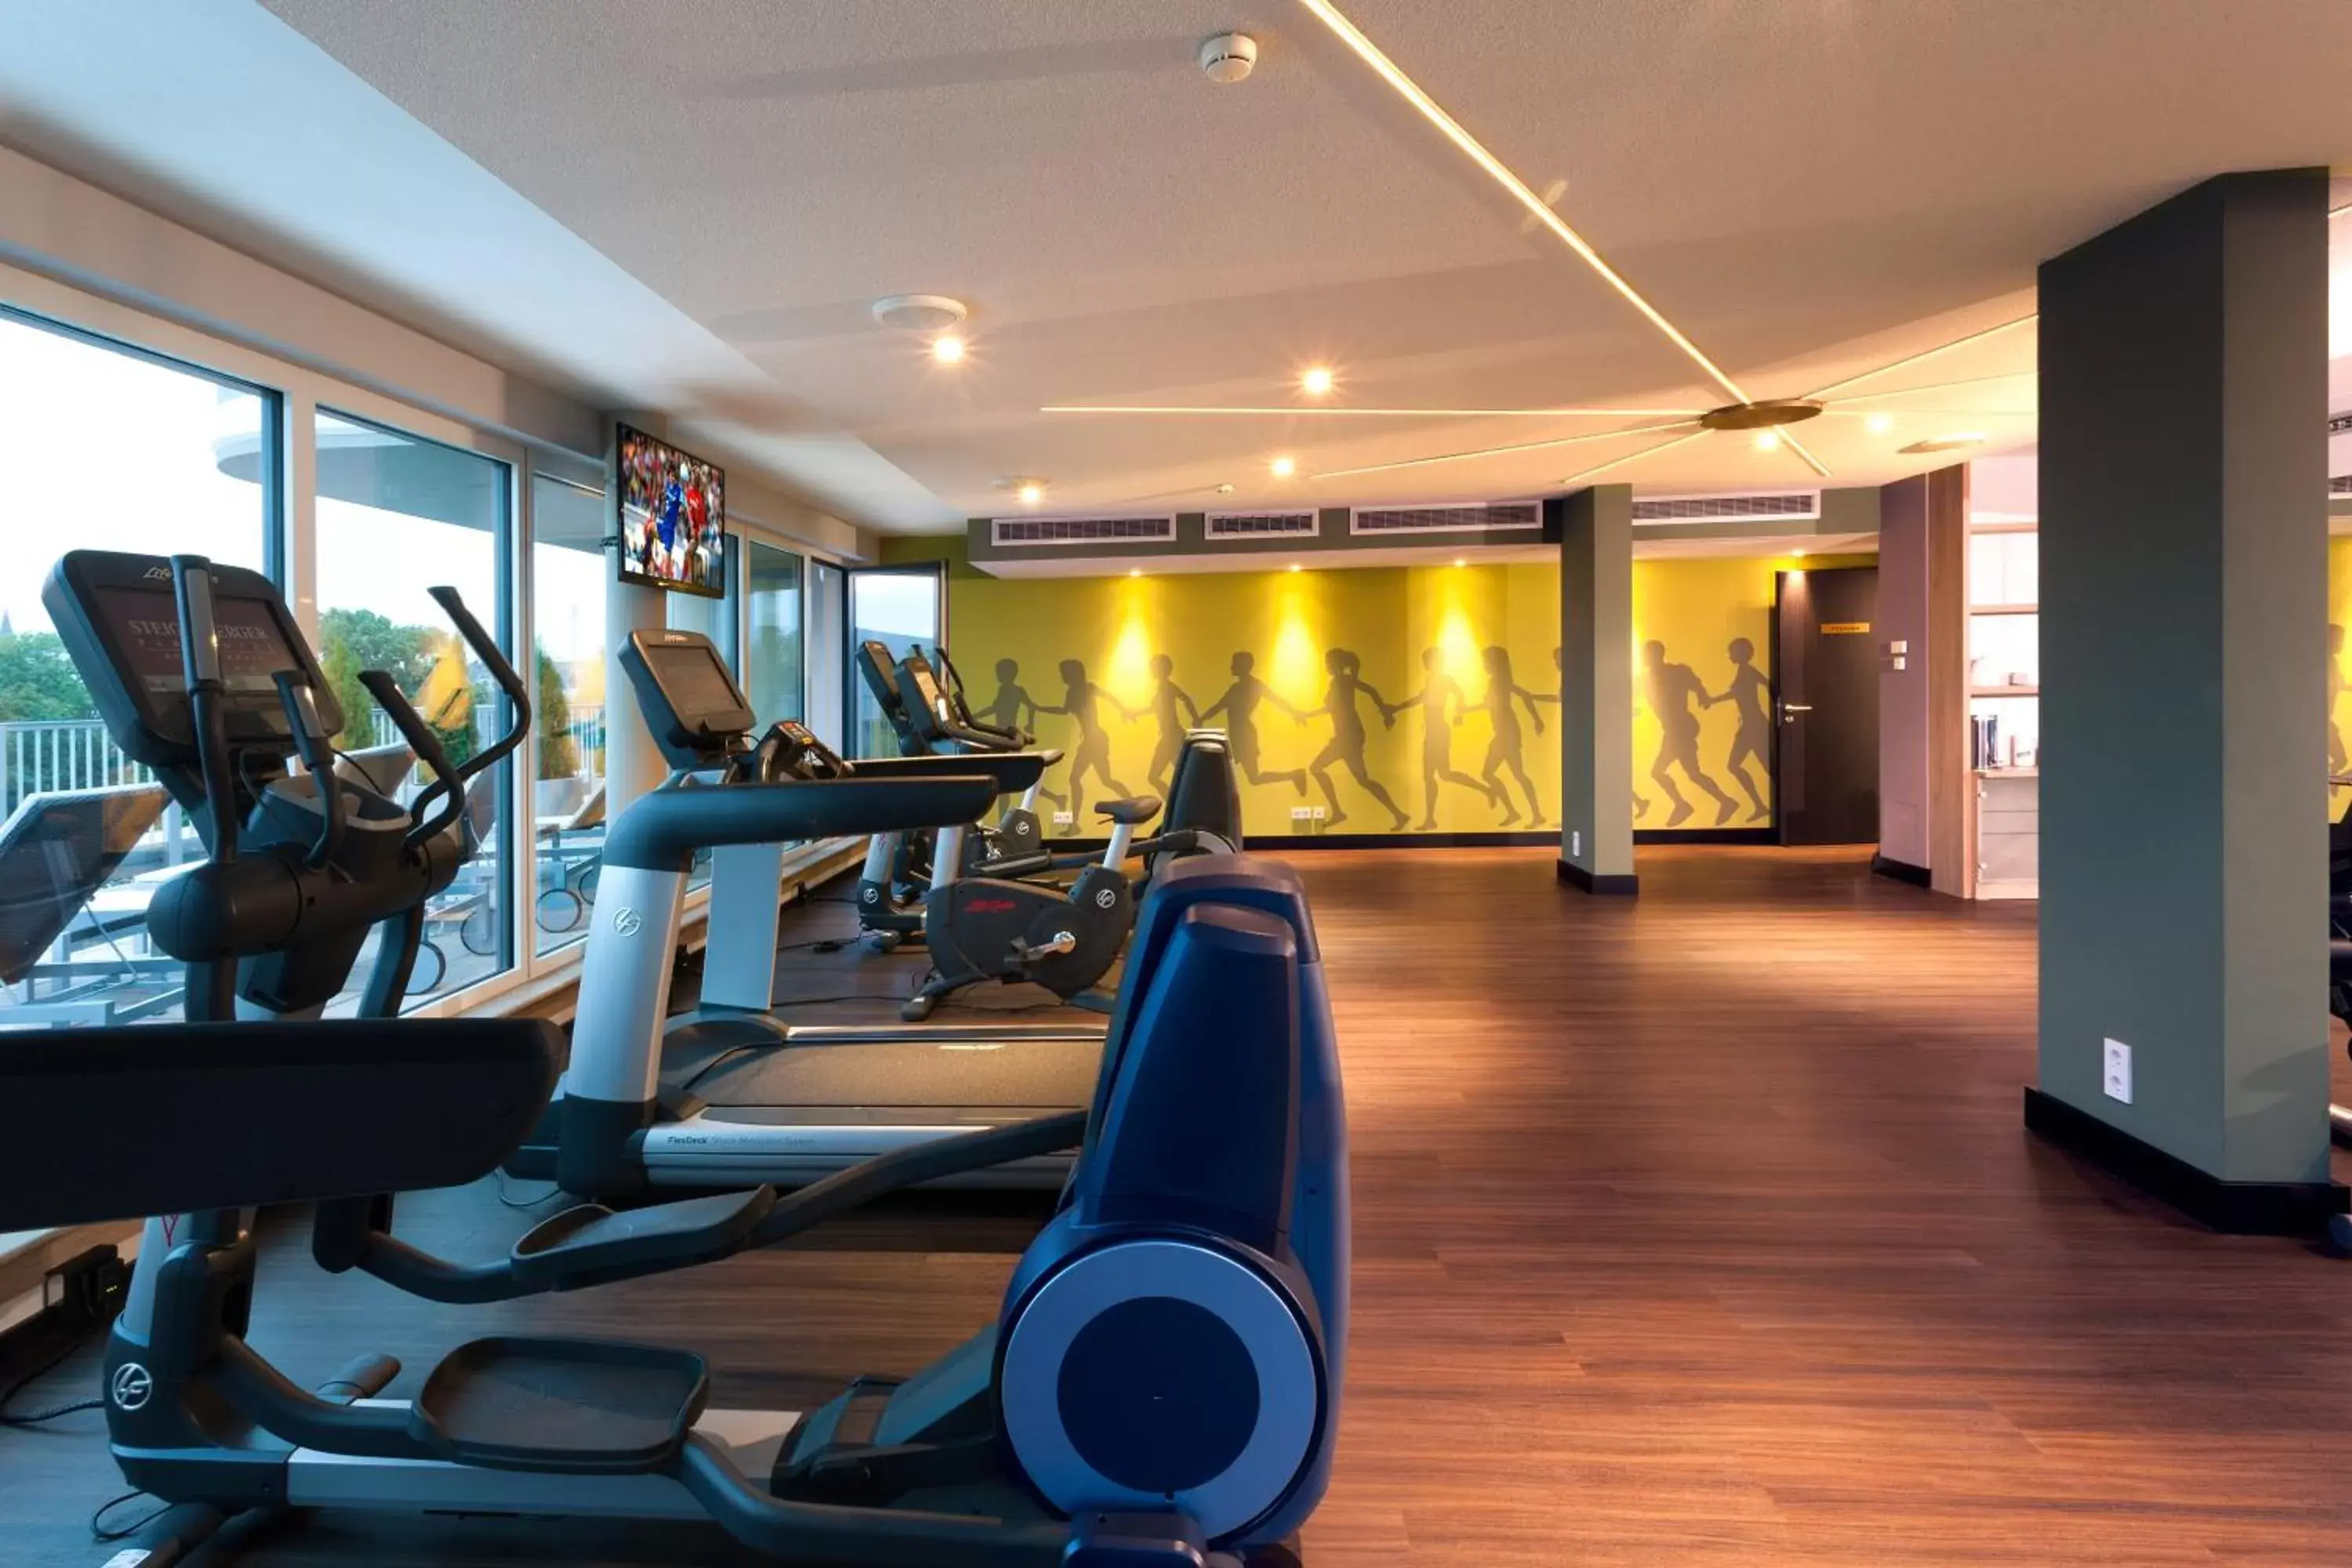 Fitness centre/facilities, Fitness Center/Facilities in Steigenberger Parkhotel Braunschweig